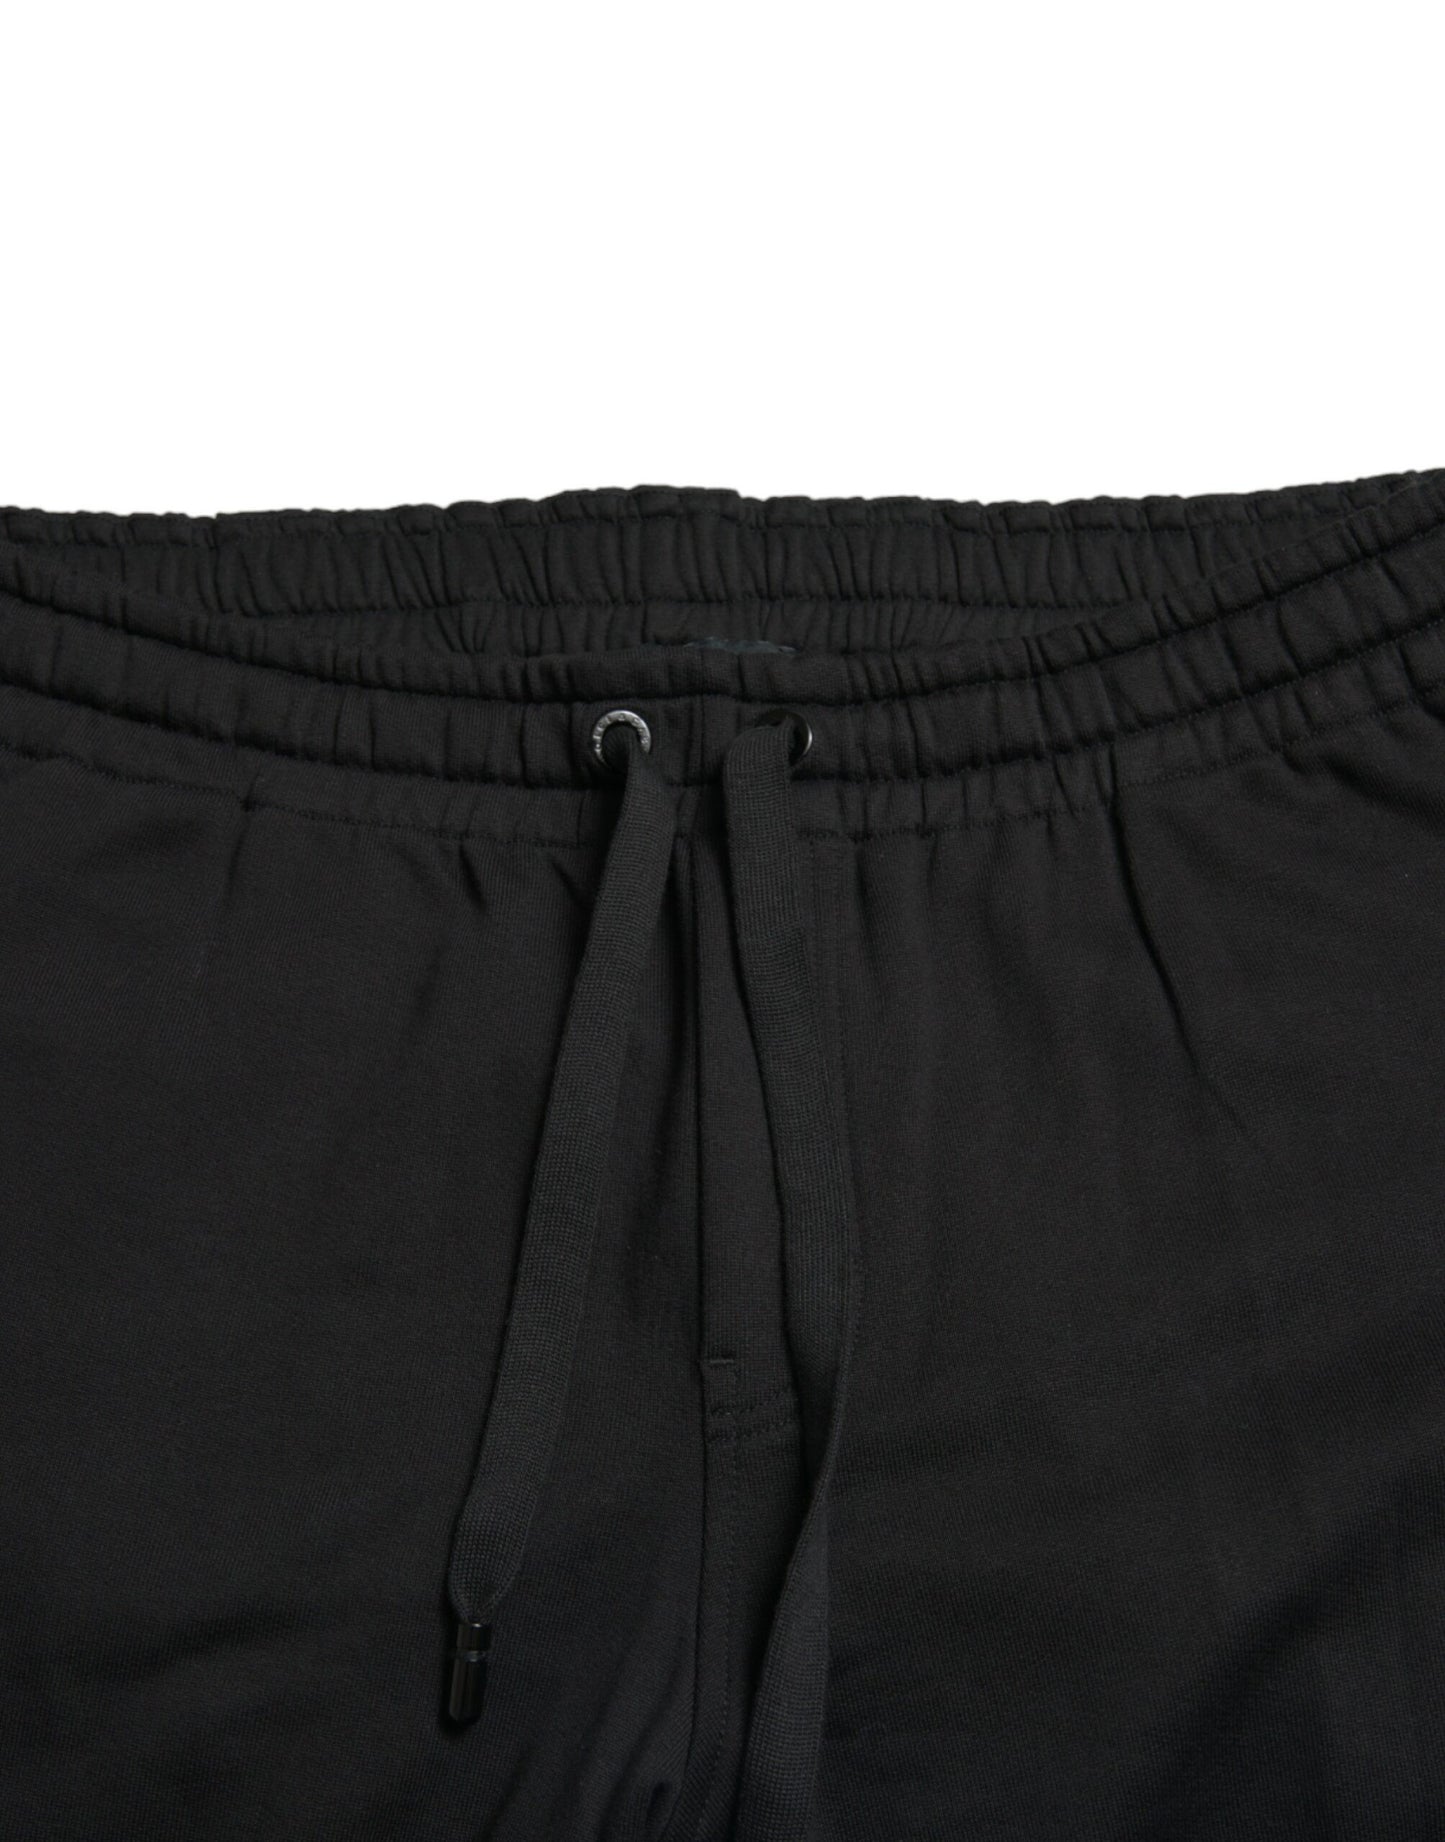 Elegant Black Cotton Jogger Pants